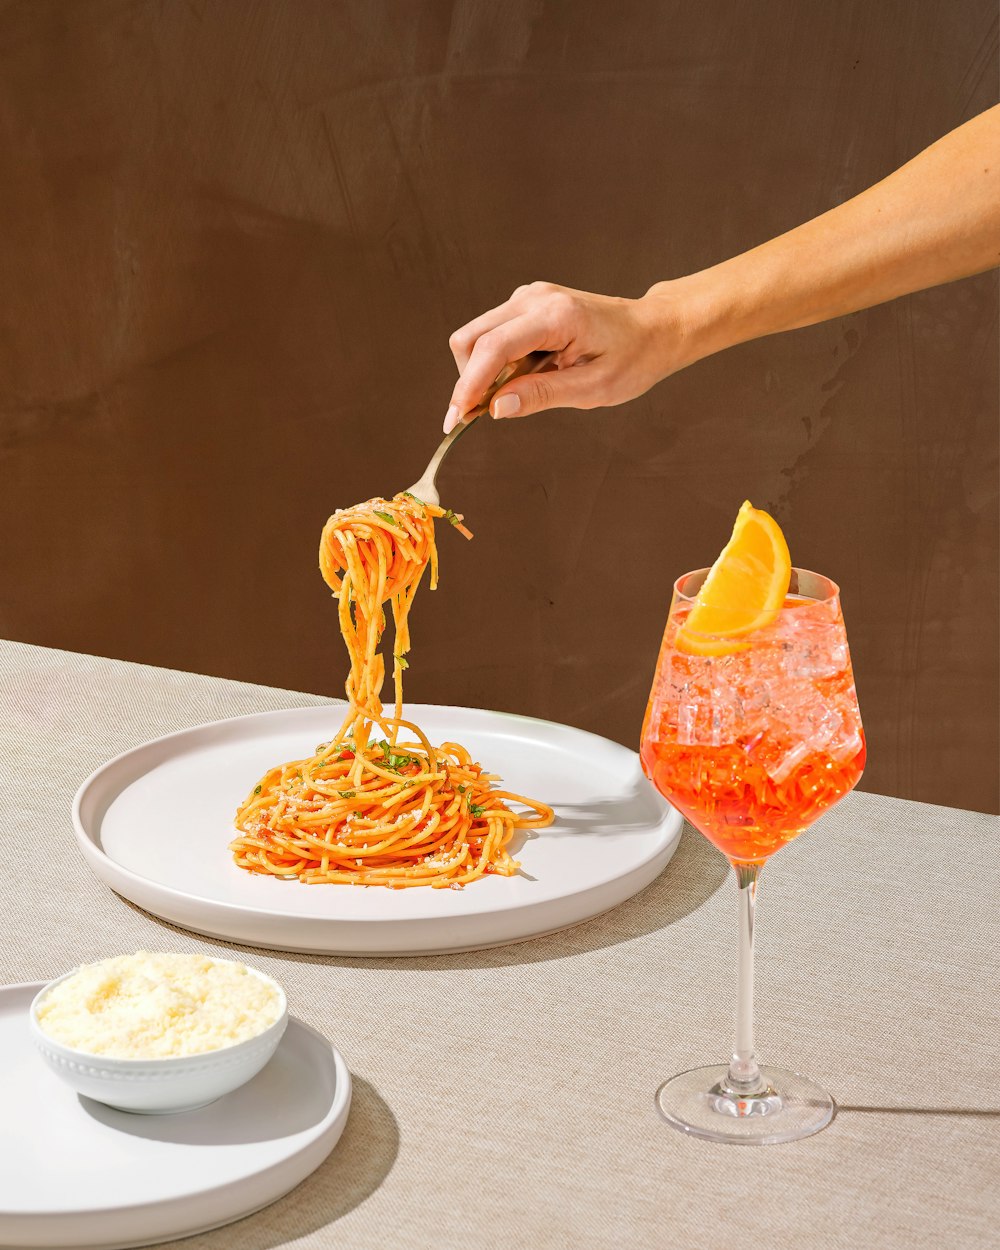 Eine Person isst Spaghetti auf einem Teller